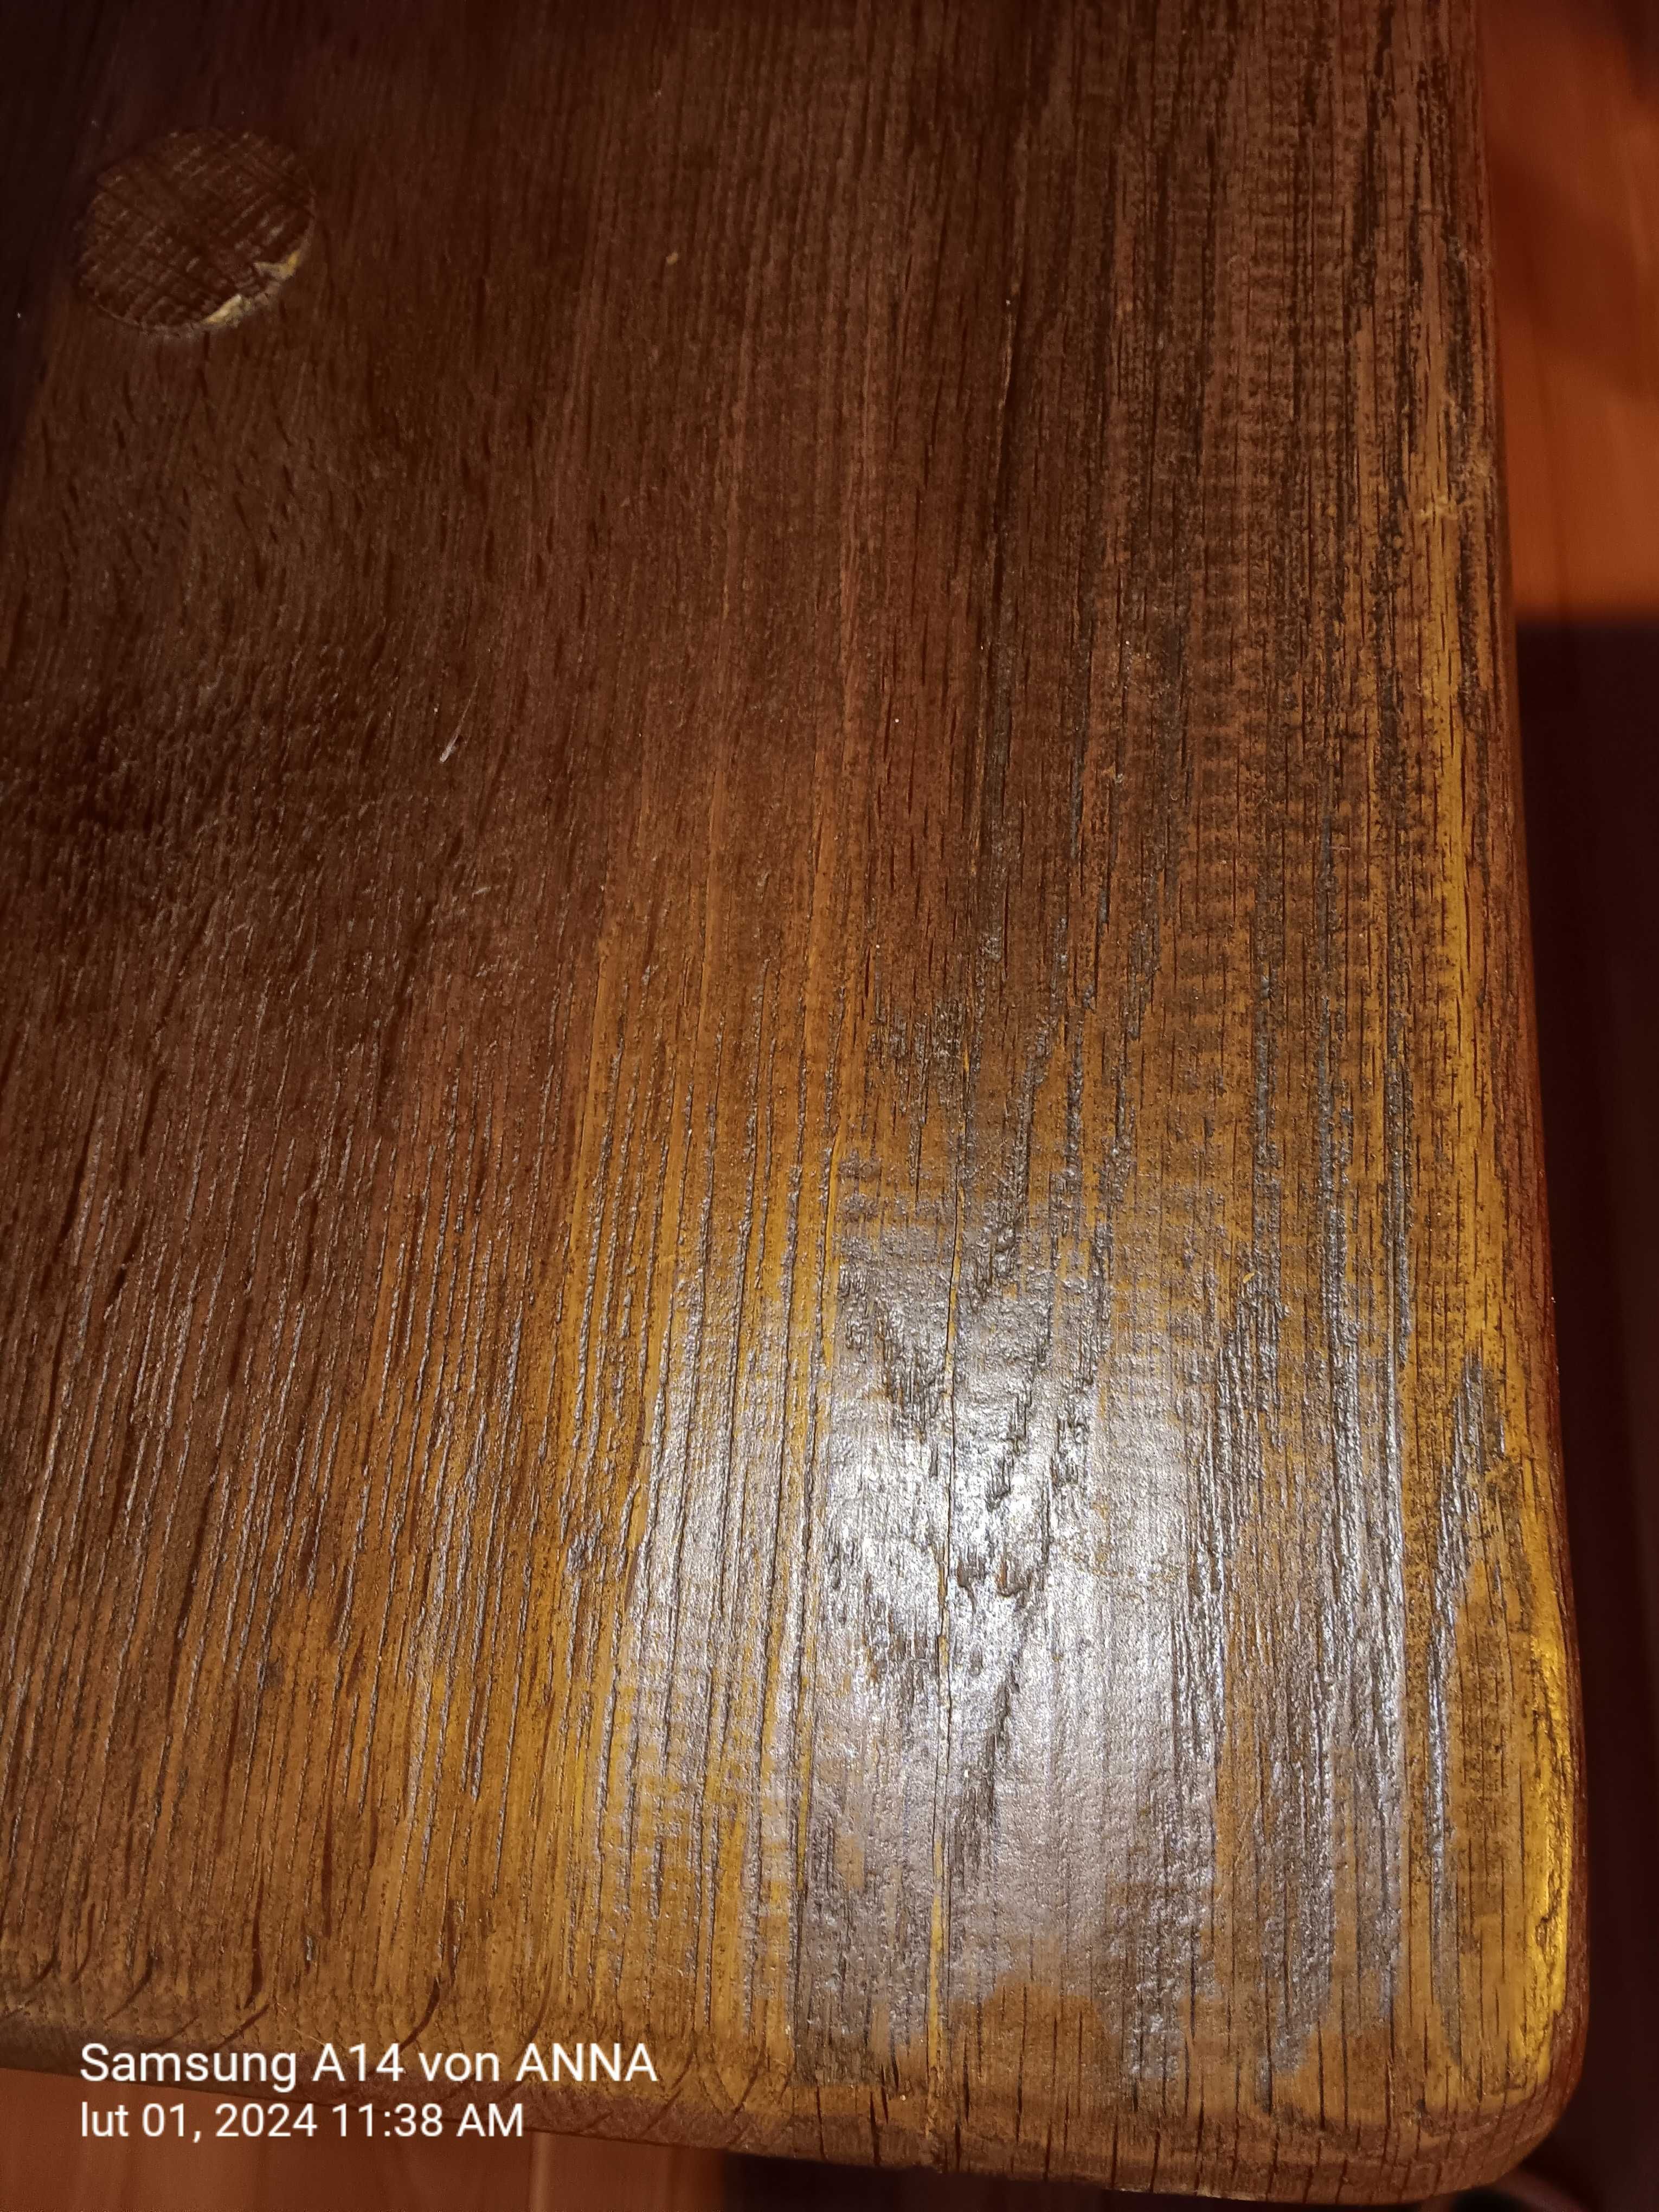 Stół drewniany używany